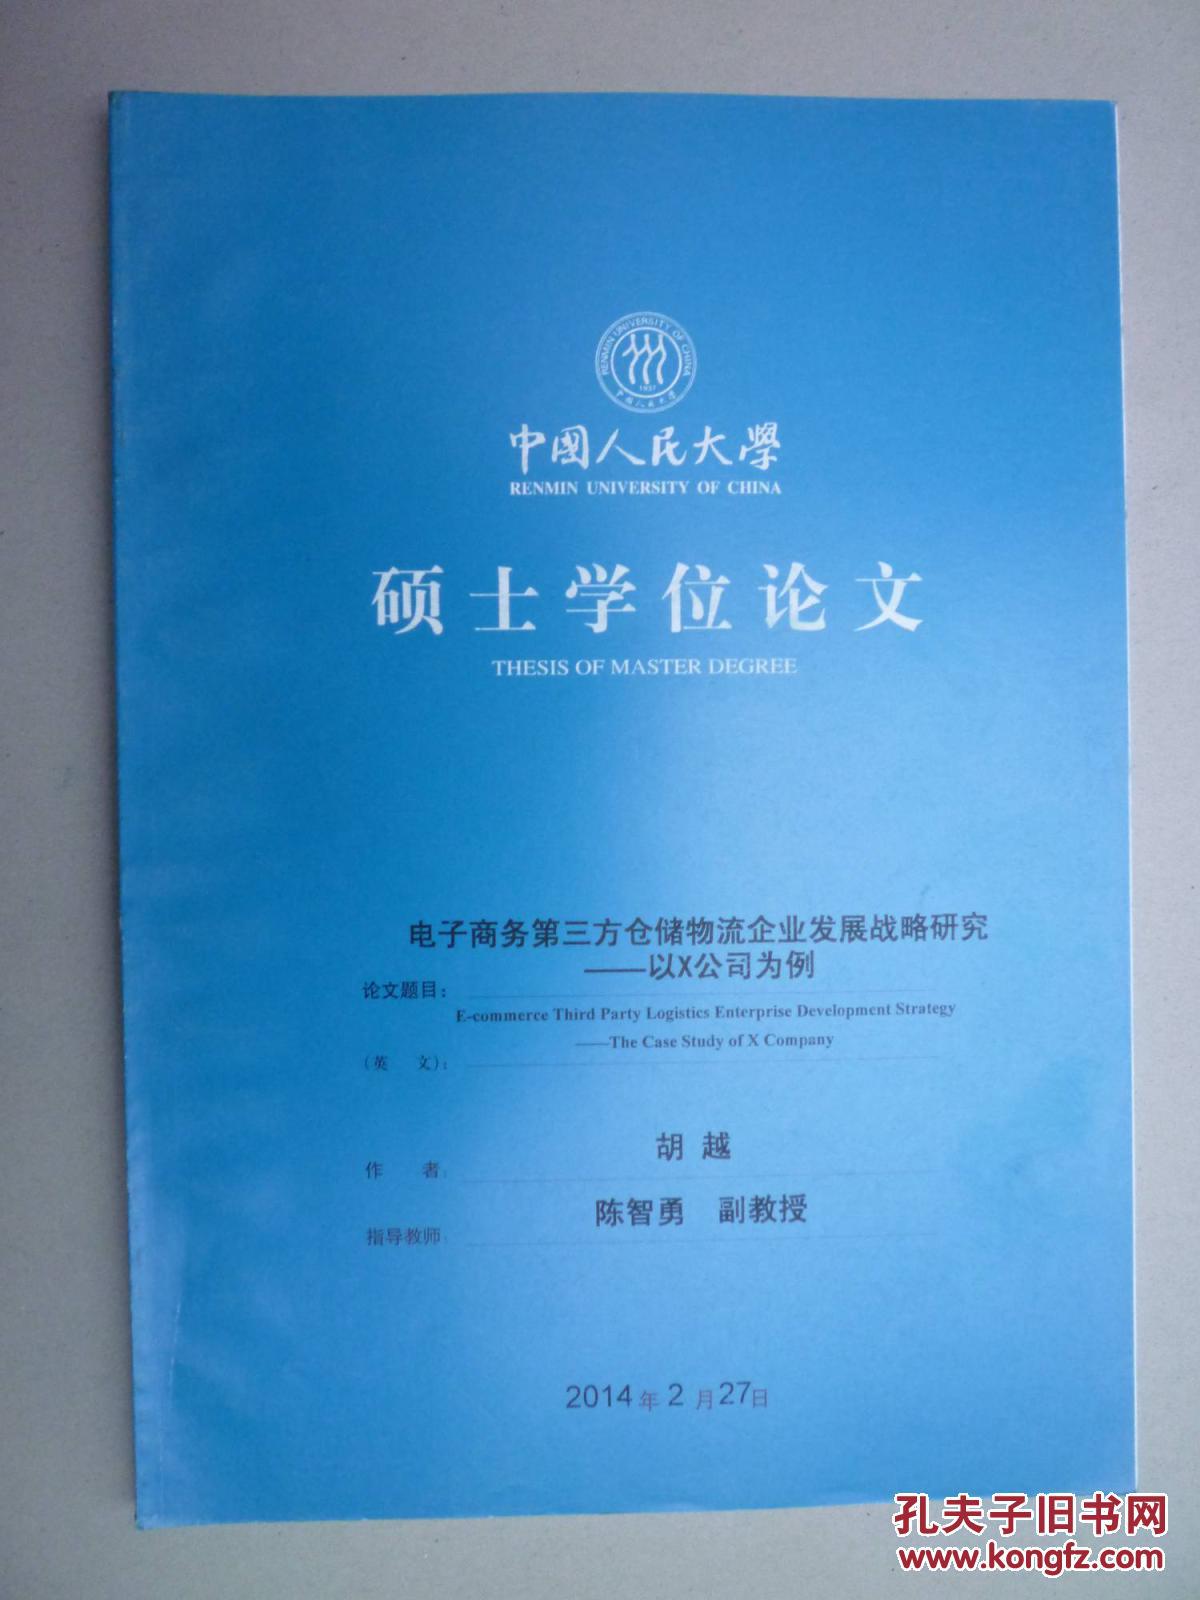 中国人民大学硕士学位论文--电子商务第三方仓